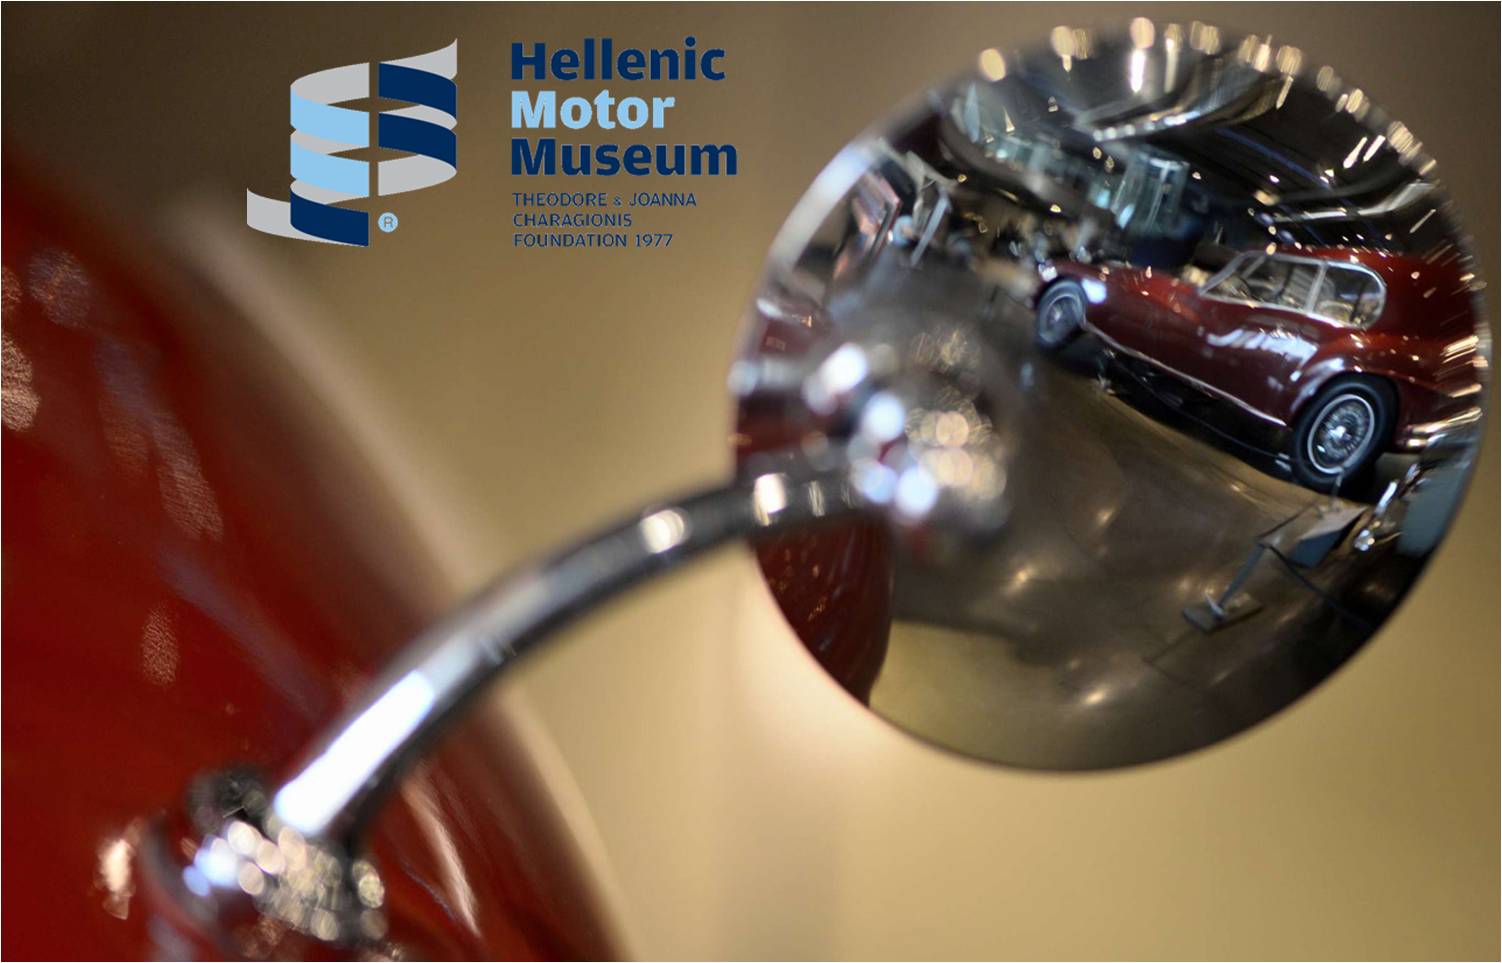 Από 4€ για είσοδο στο ''Ελληνικό Μουσείο Αυτοκινήτου'', αφιερωμένο στην τεχνολογία και στην εξέλιξη του αυτοκινήτου, με περισσότερα από 110 εκθέματα. Επιπρόσθετα οδηγήστε στον ΠΡΟΣΟΜΟΙΩΤΗ της F1 του μουσείου με μόνο 4€!